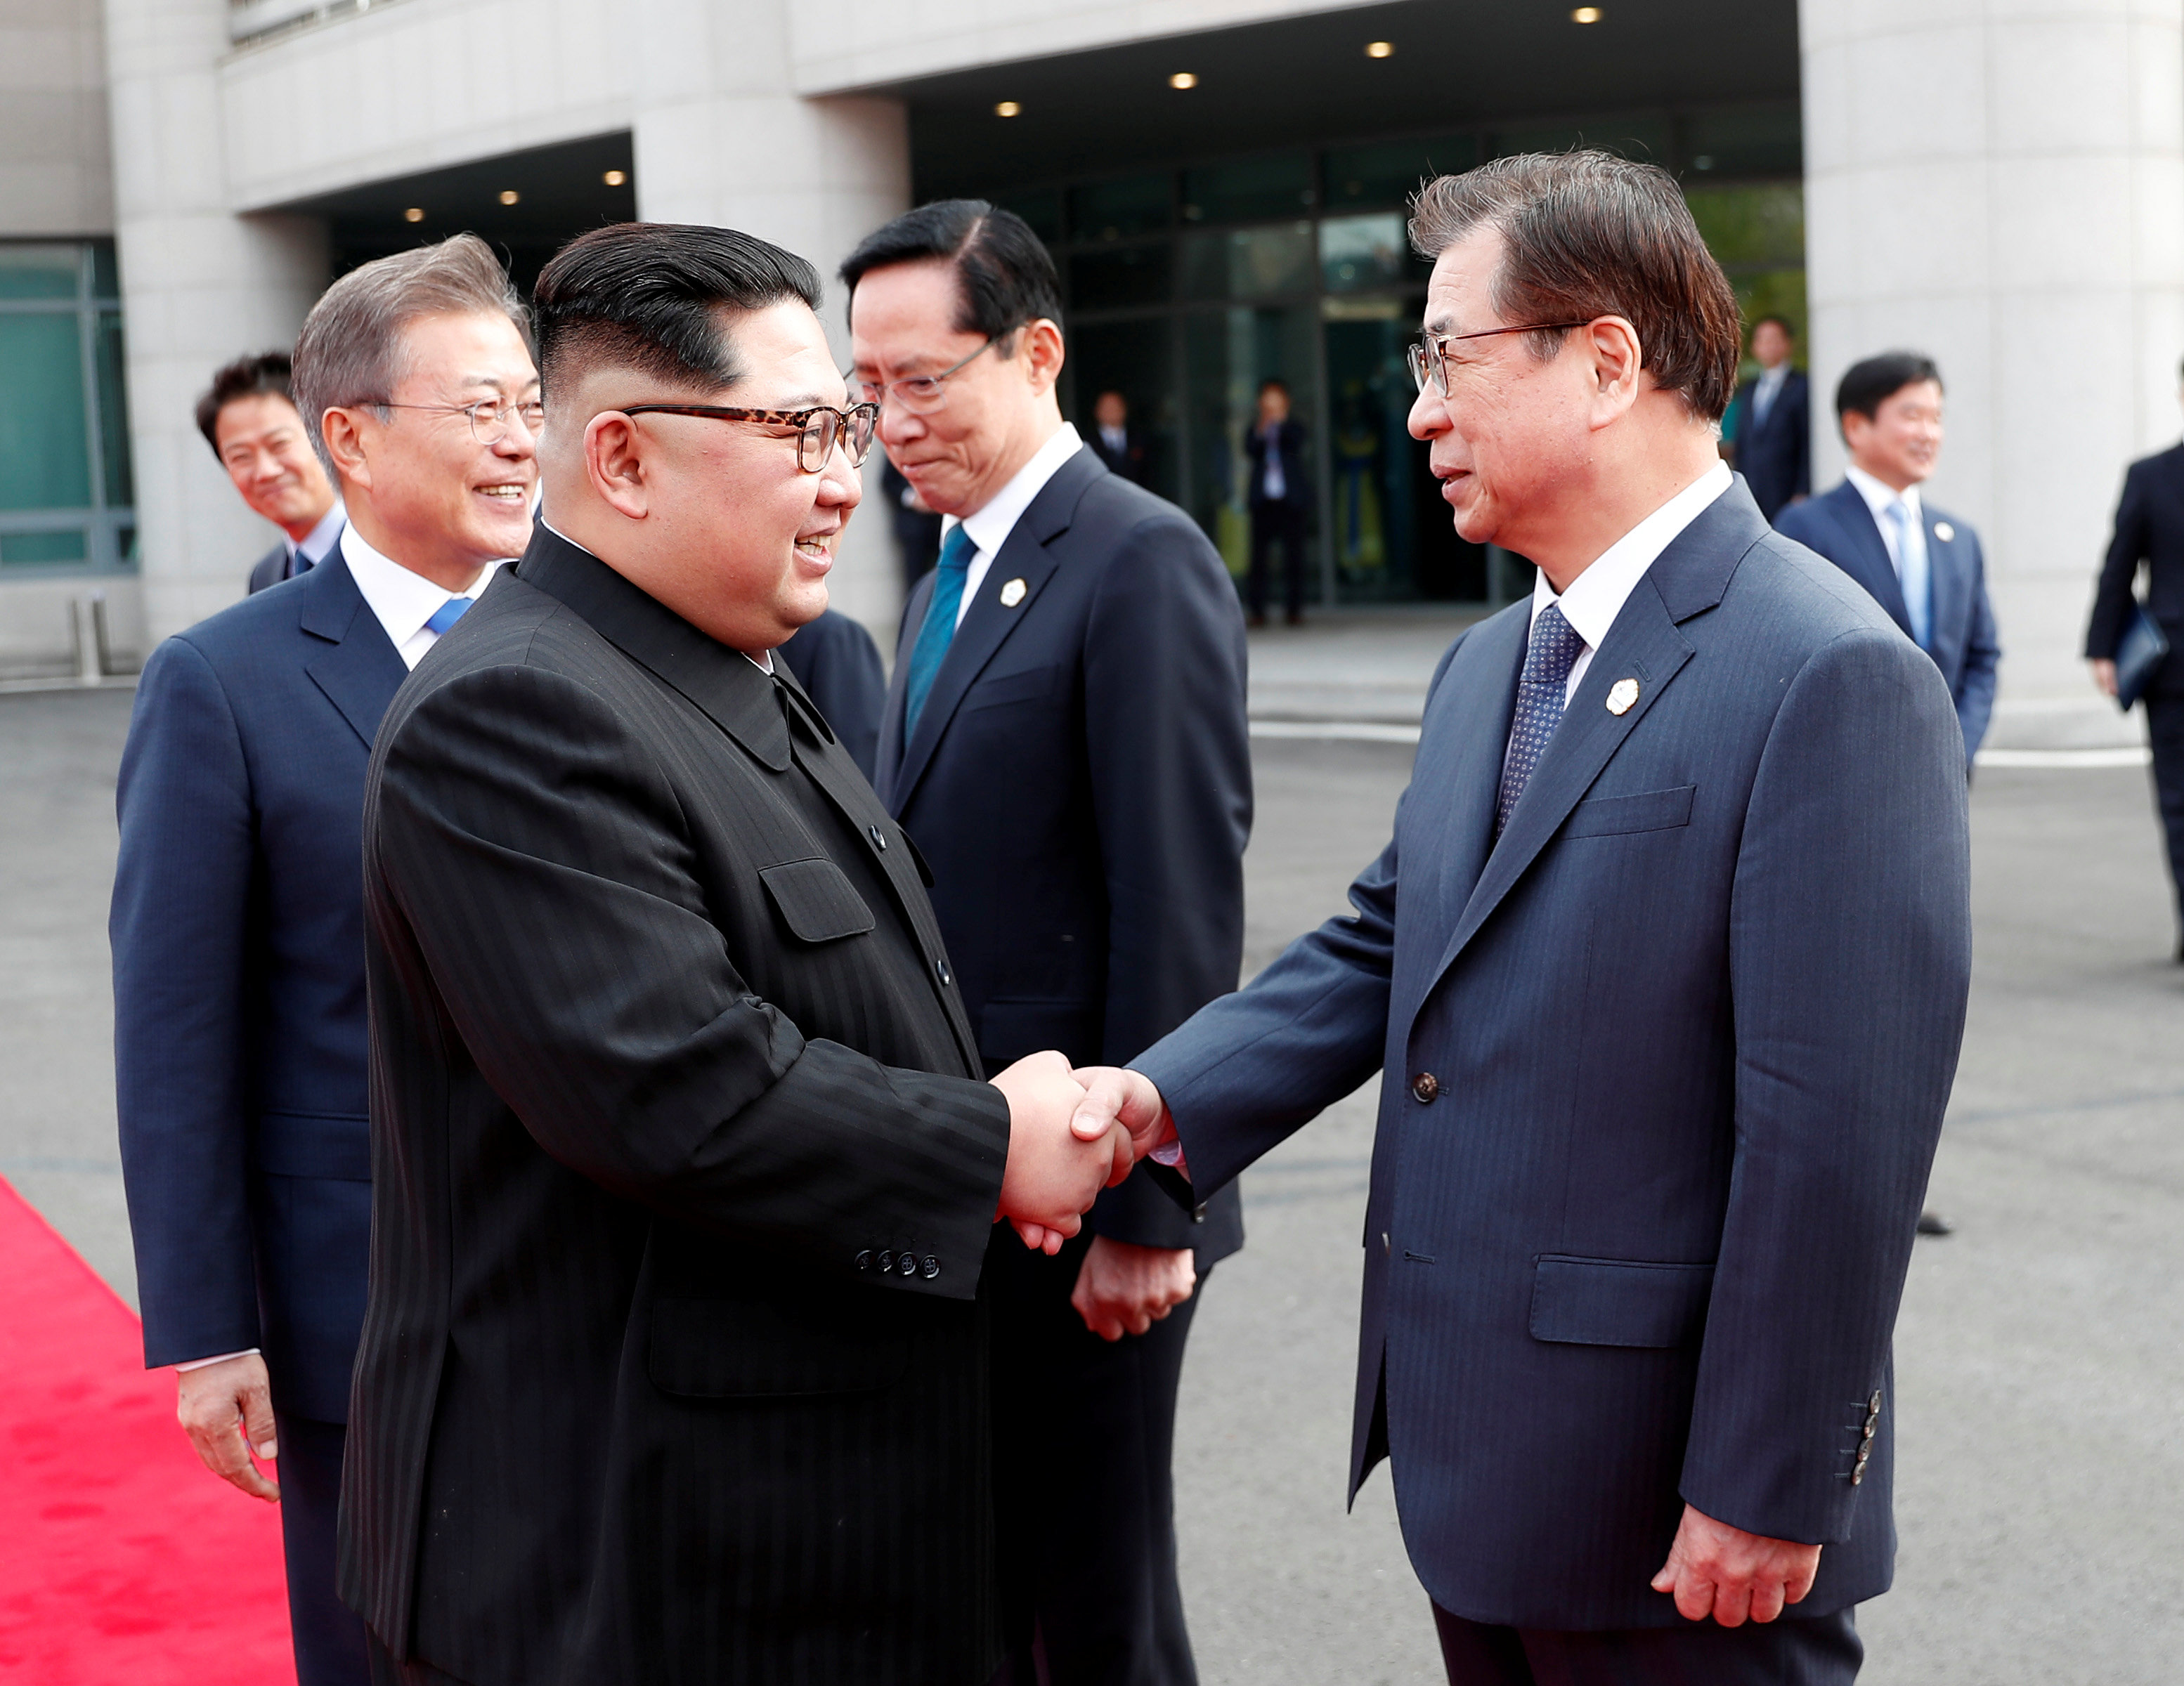 Β. Κορέα: Η ιστορική σύνοδος κορυφής ανοίγει τον δρόμο για την ειρήνη